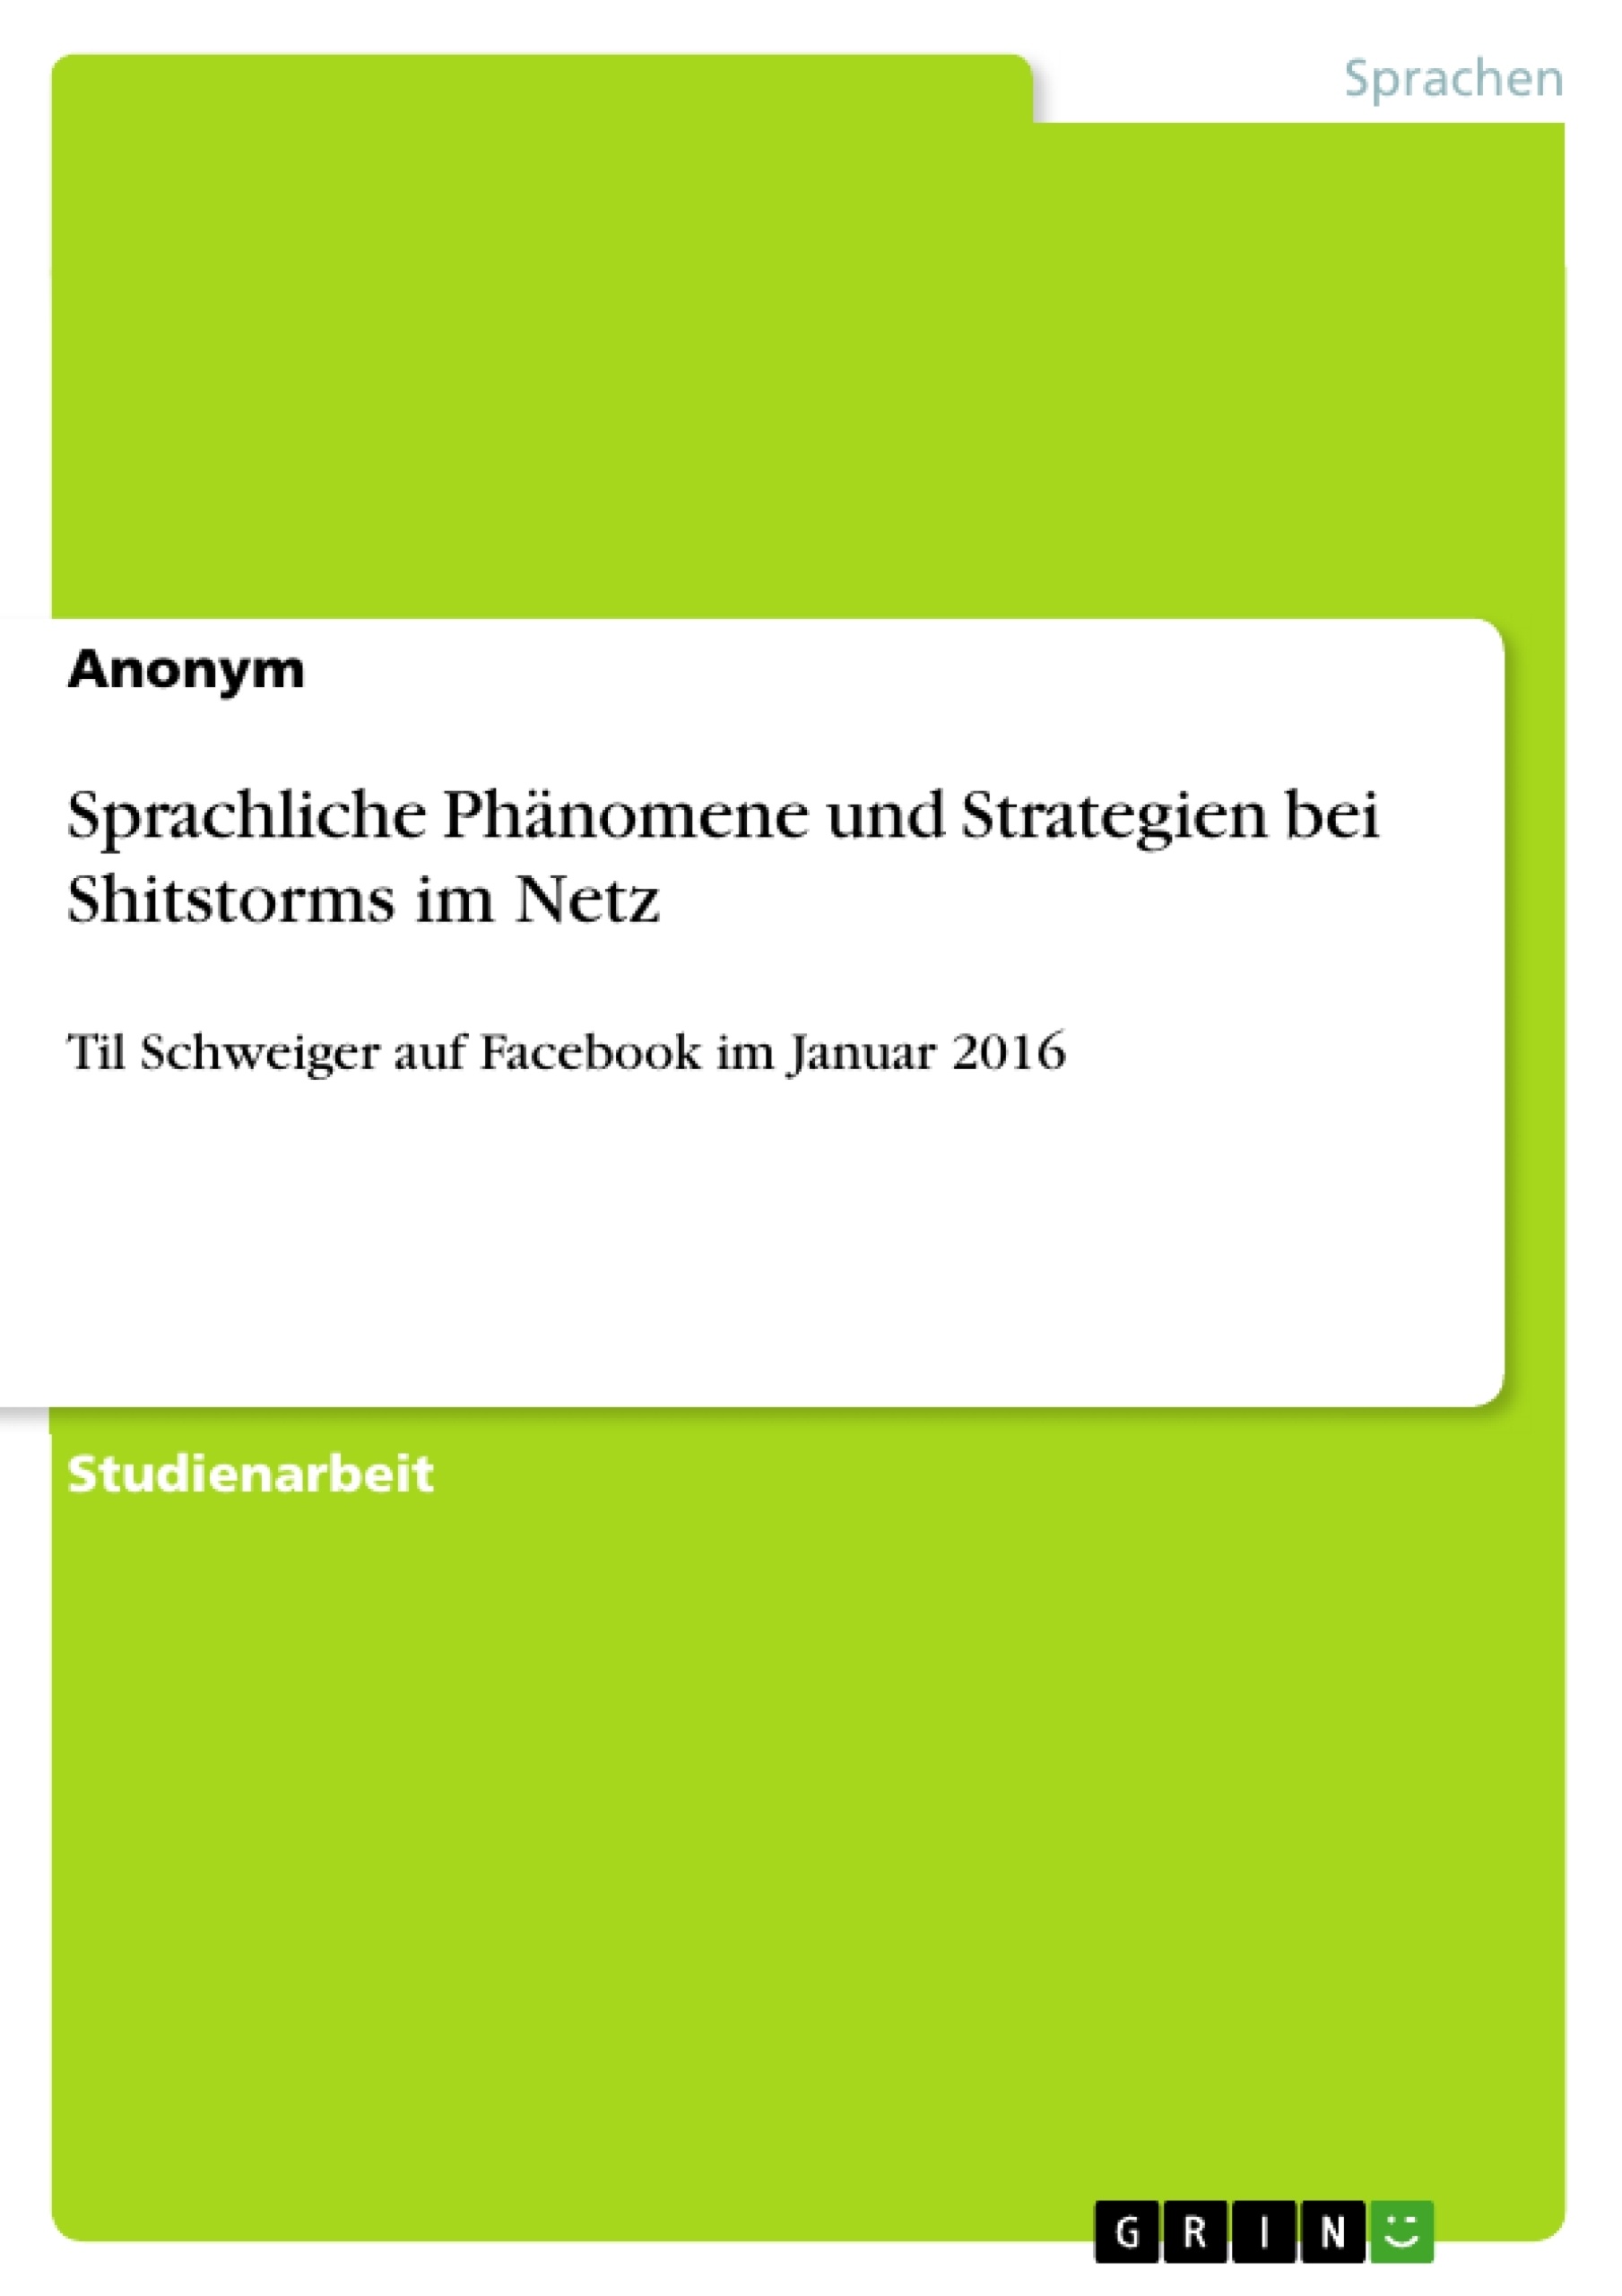 Title: Sprachliche Phänomene und Strategien bei Shitstorms im Netz